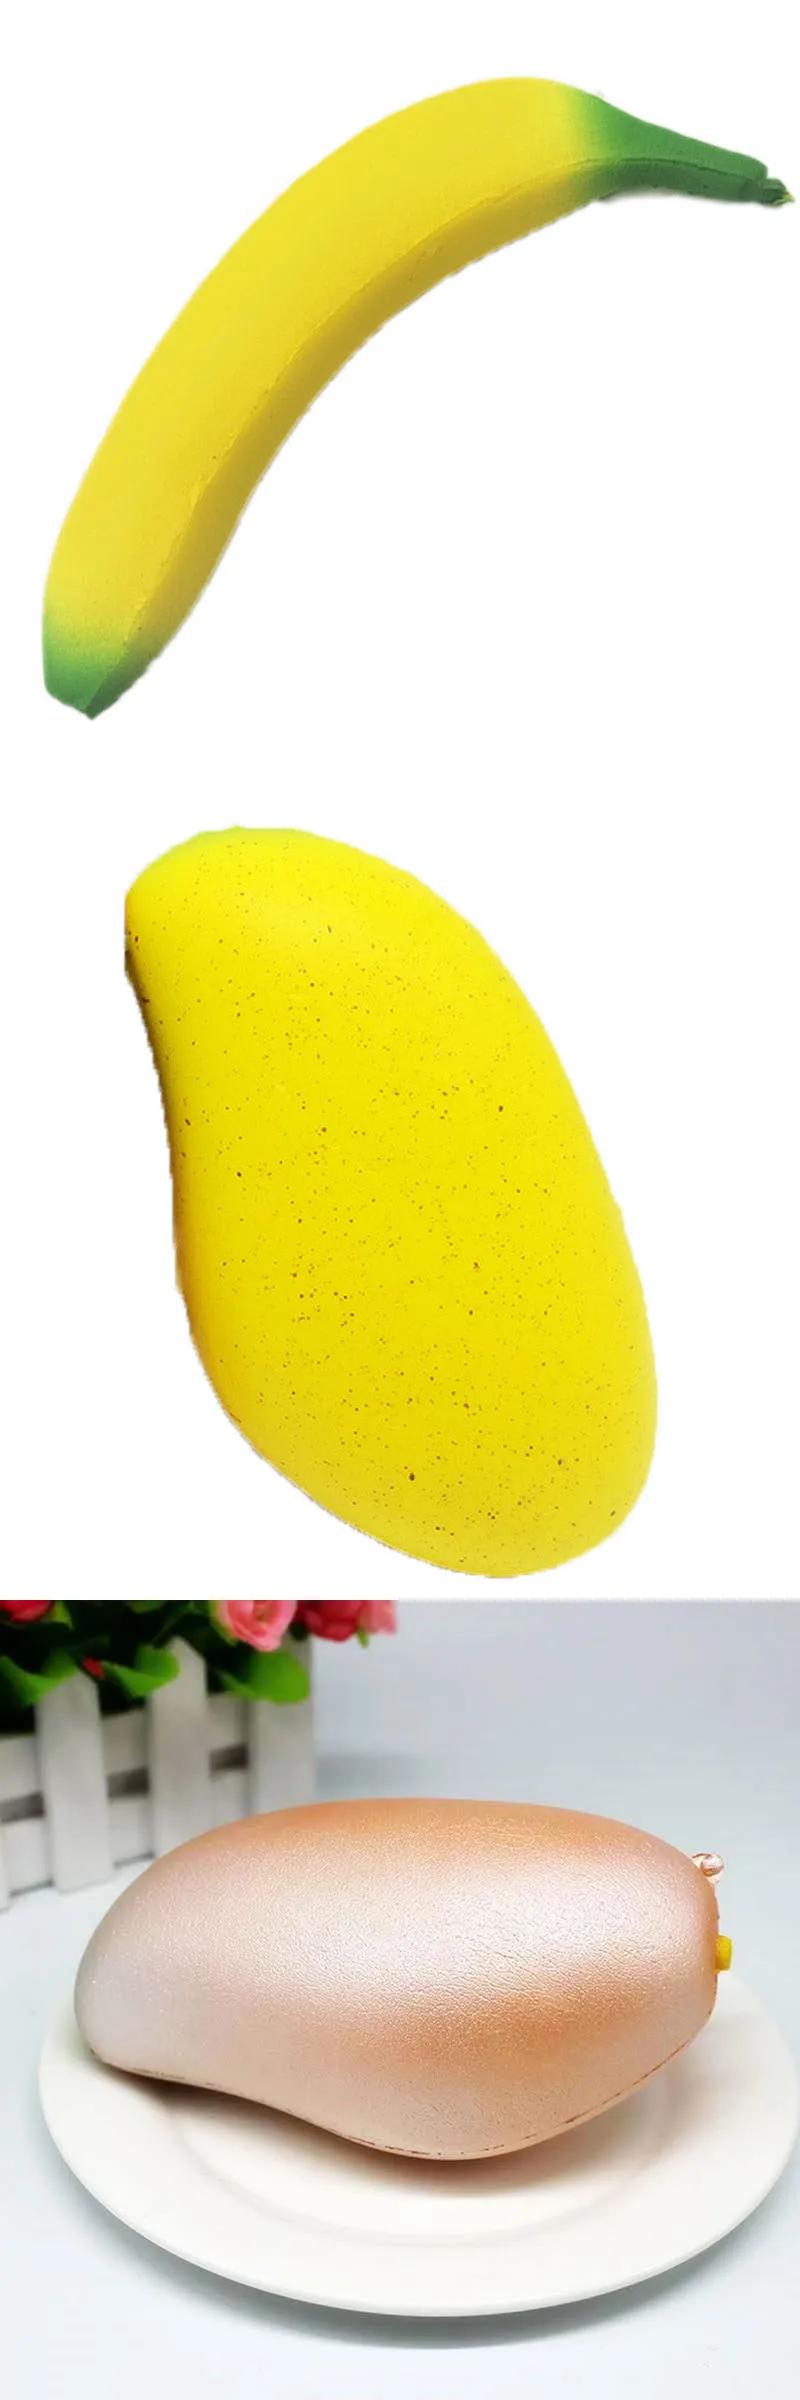 Diy Персик манго антистресс мягкость игрушки имитация фруктовая серия медленное увеличение стресса рельефная забавная игрушка для